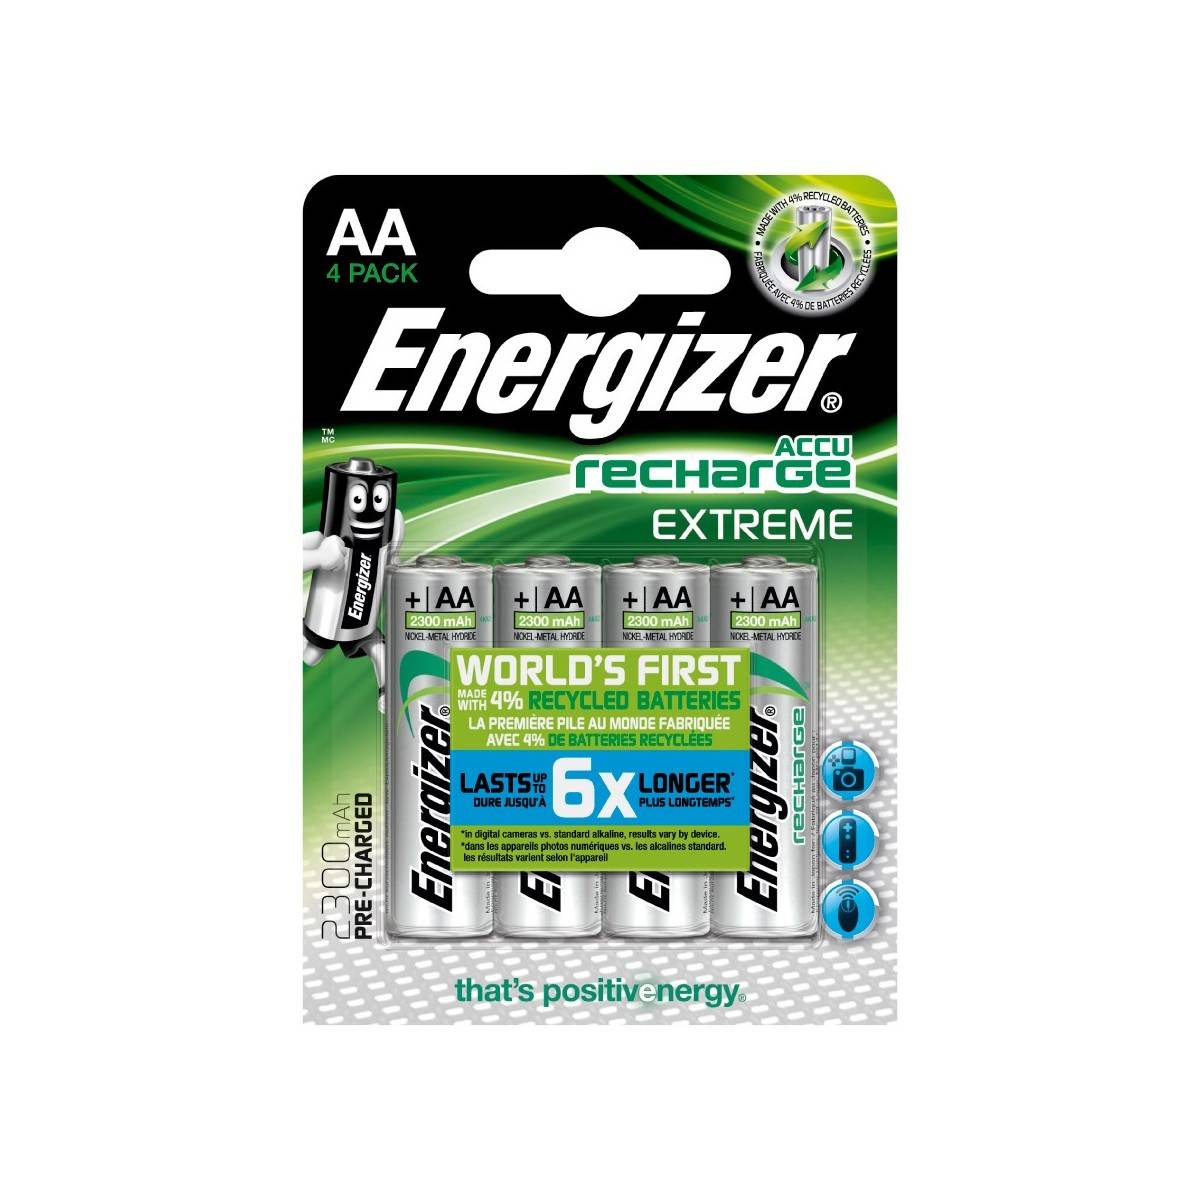 Energizer Extreme Wiederaufladbare Batterie 2300mAh HR6 (AA) Blister mit 4 Stk.